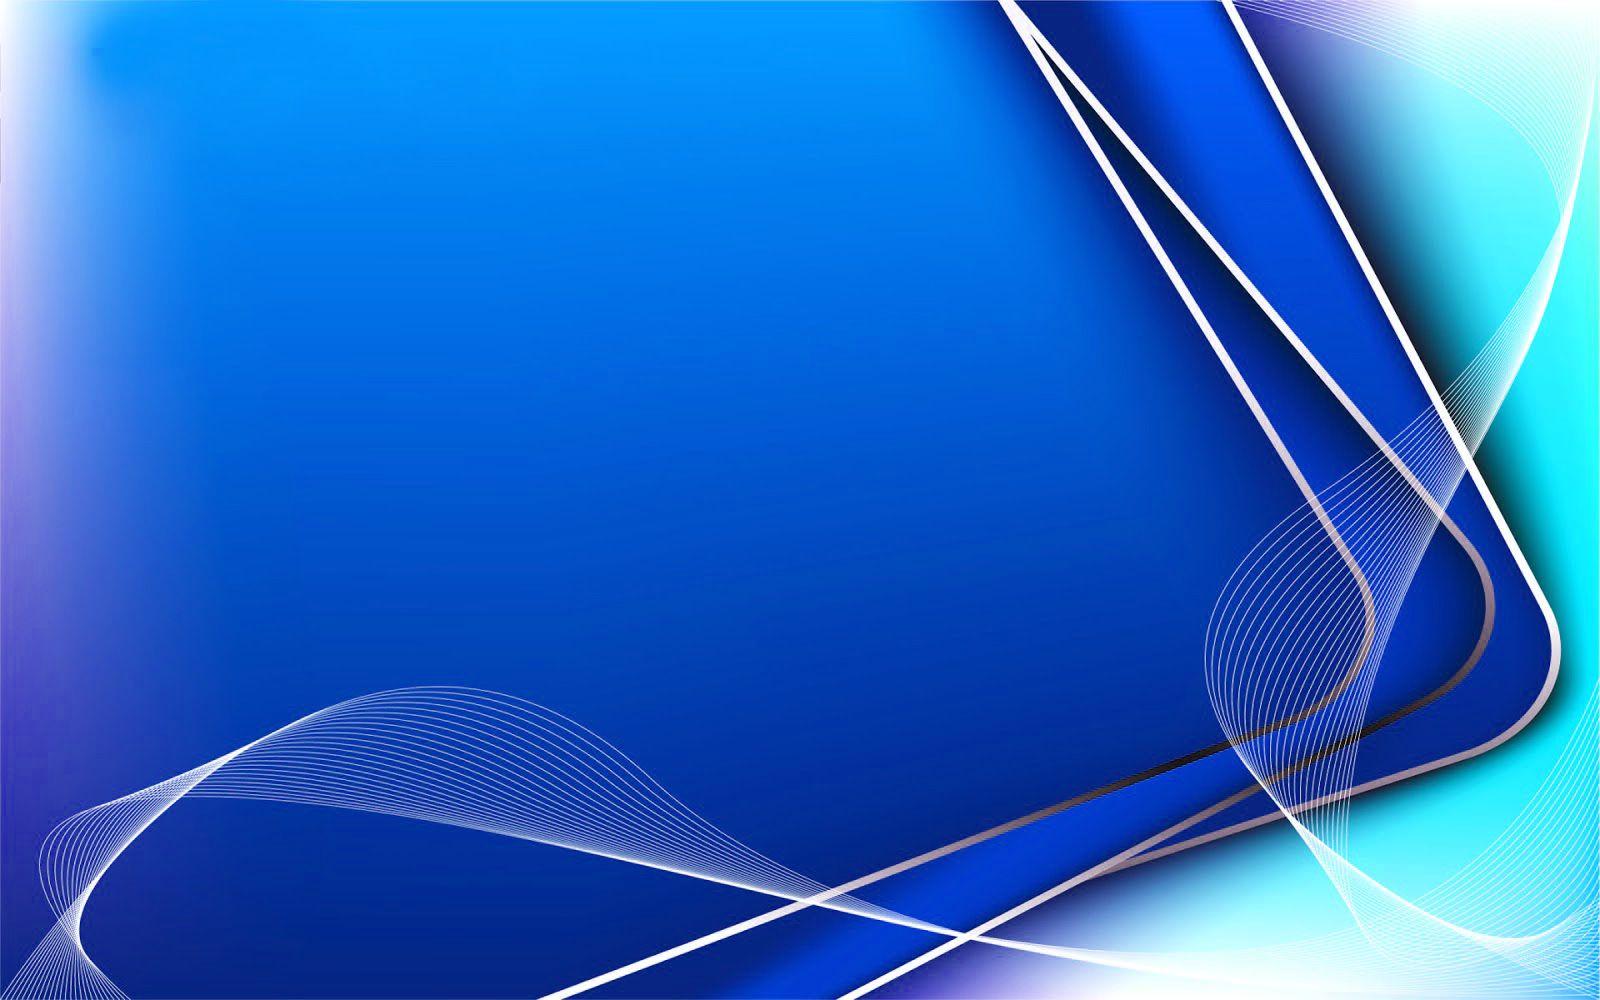 Download 76 Background Keren Biru Gratis Terbaru - Download Background